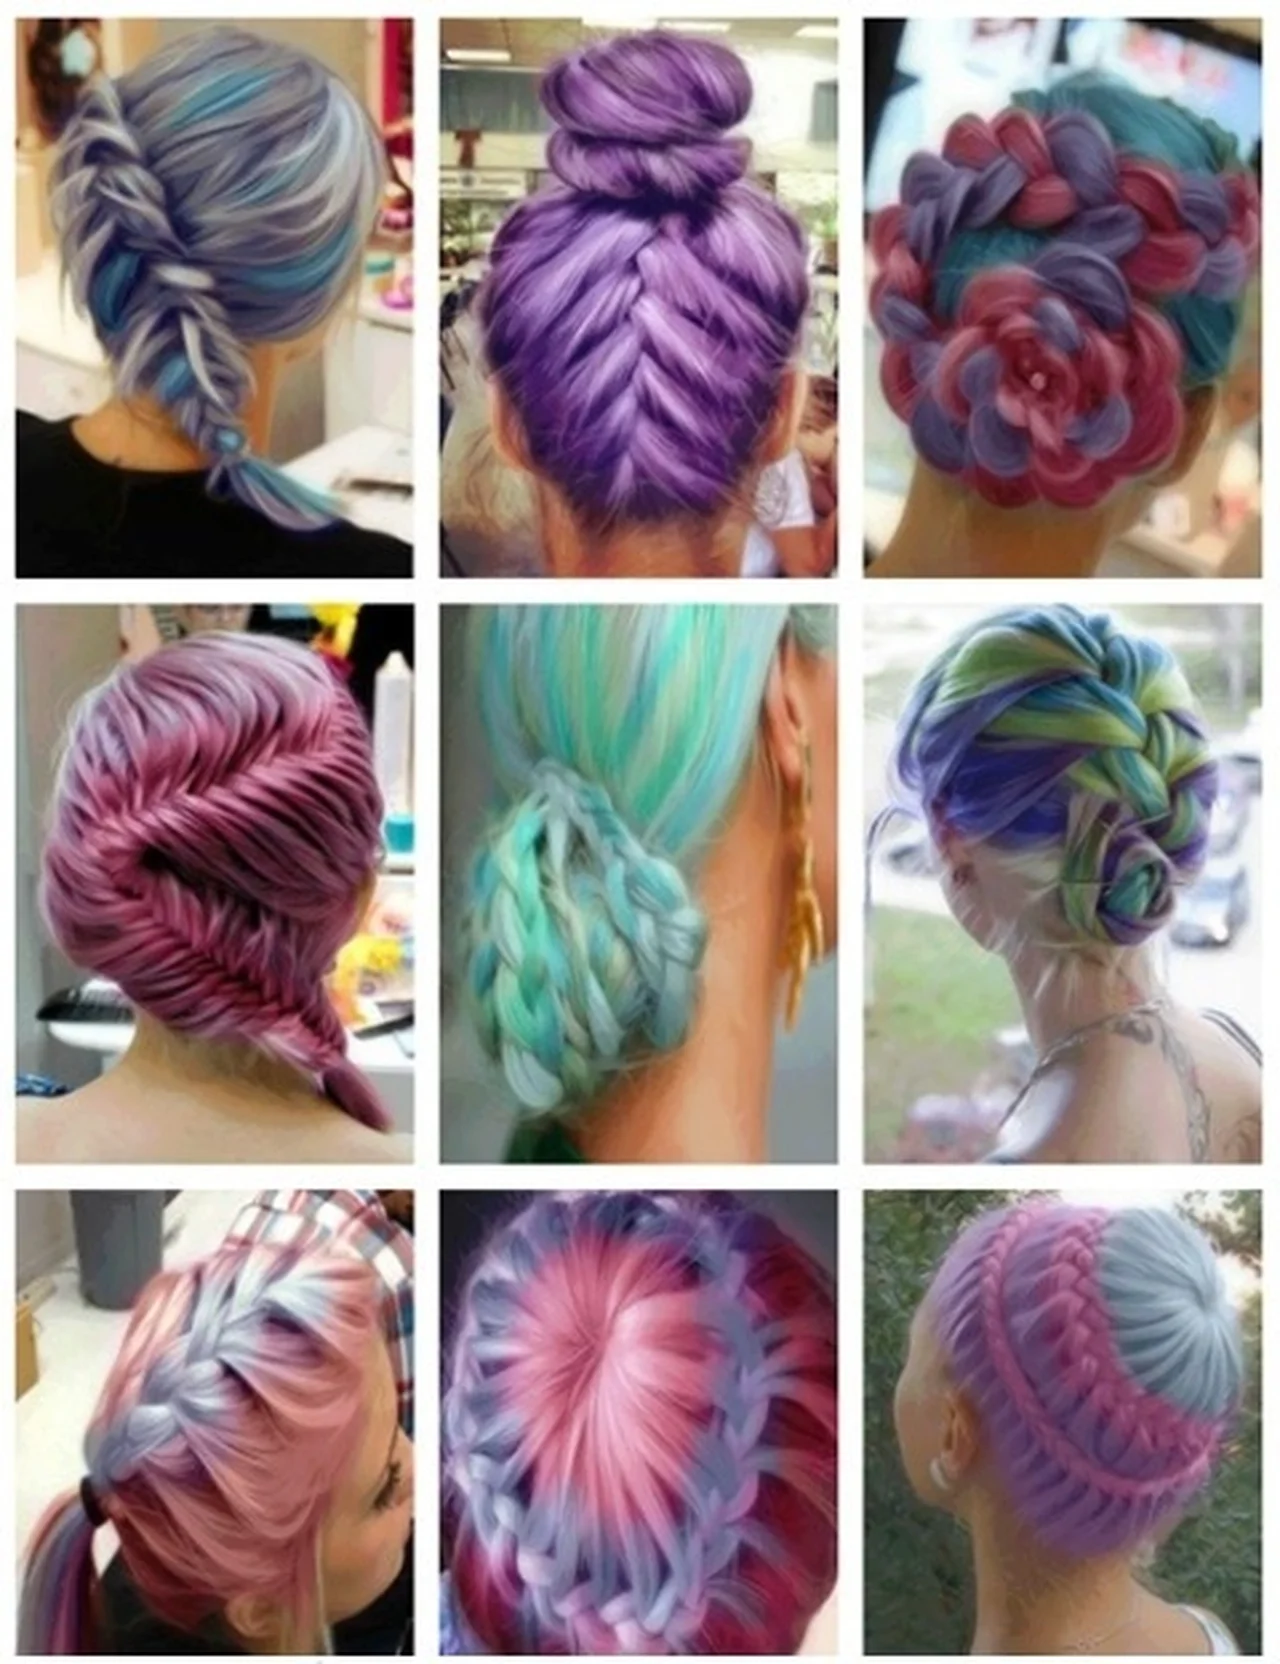 Kolorowe fryzury - inspiracja